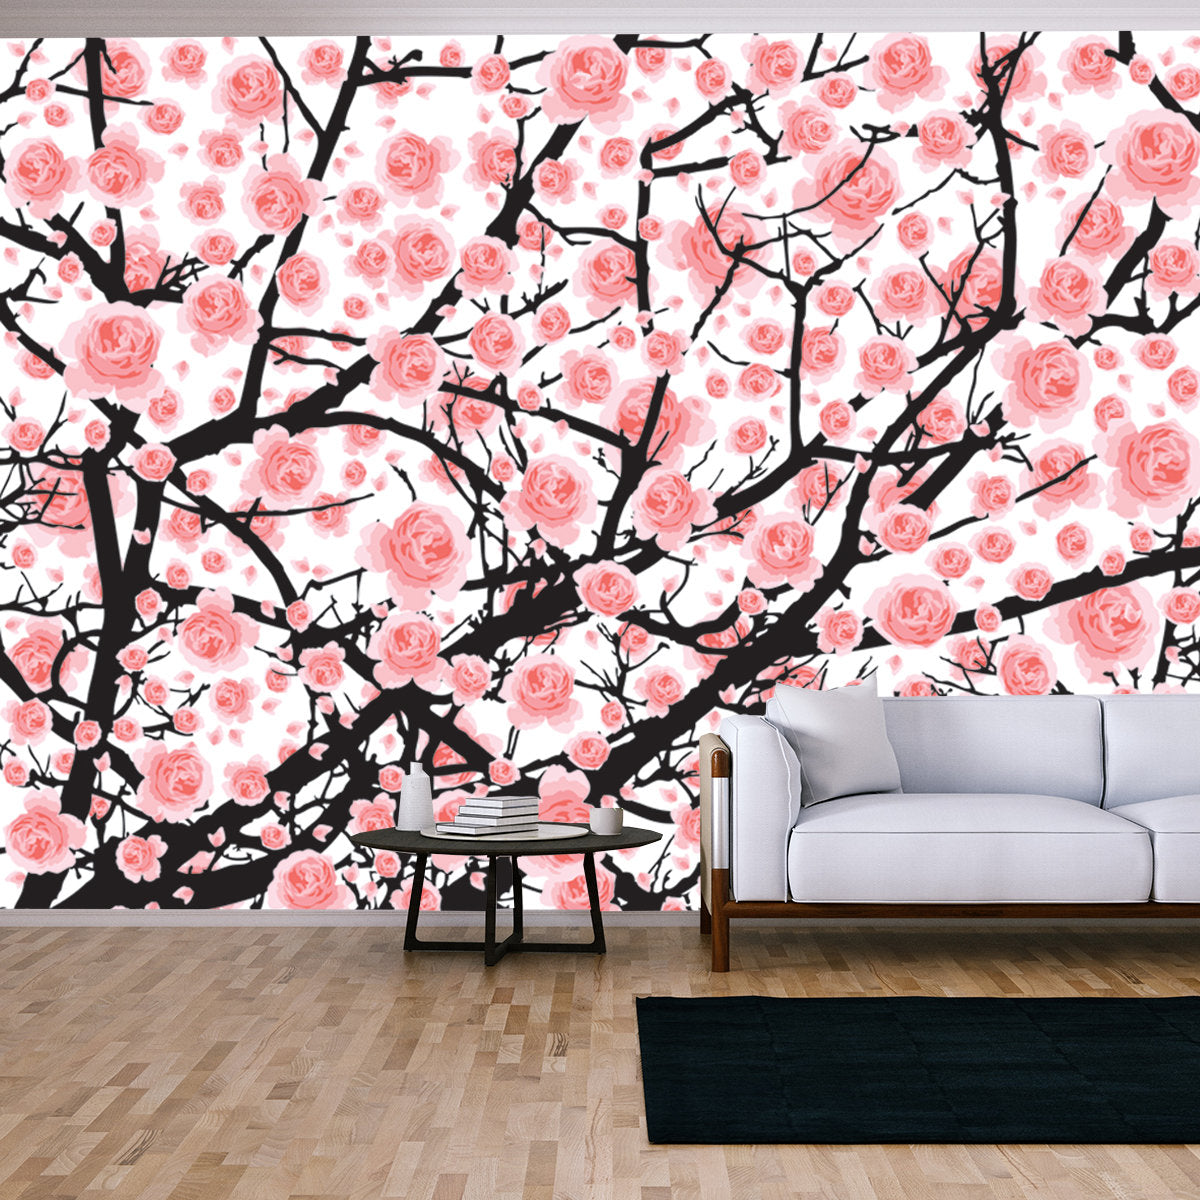 Full Bloom Pink Sakura Tree (Cherry Blossom) Black Wood Isolated on White, Flower Branch Backdrop Wallpaper Living Room Mural